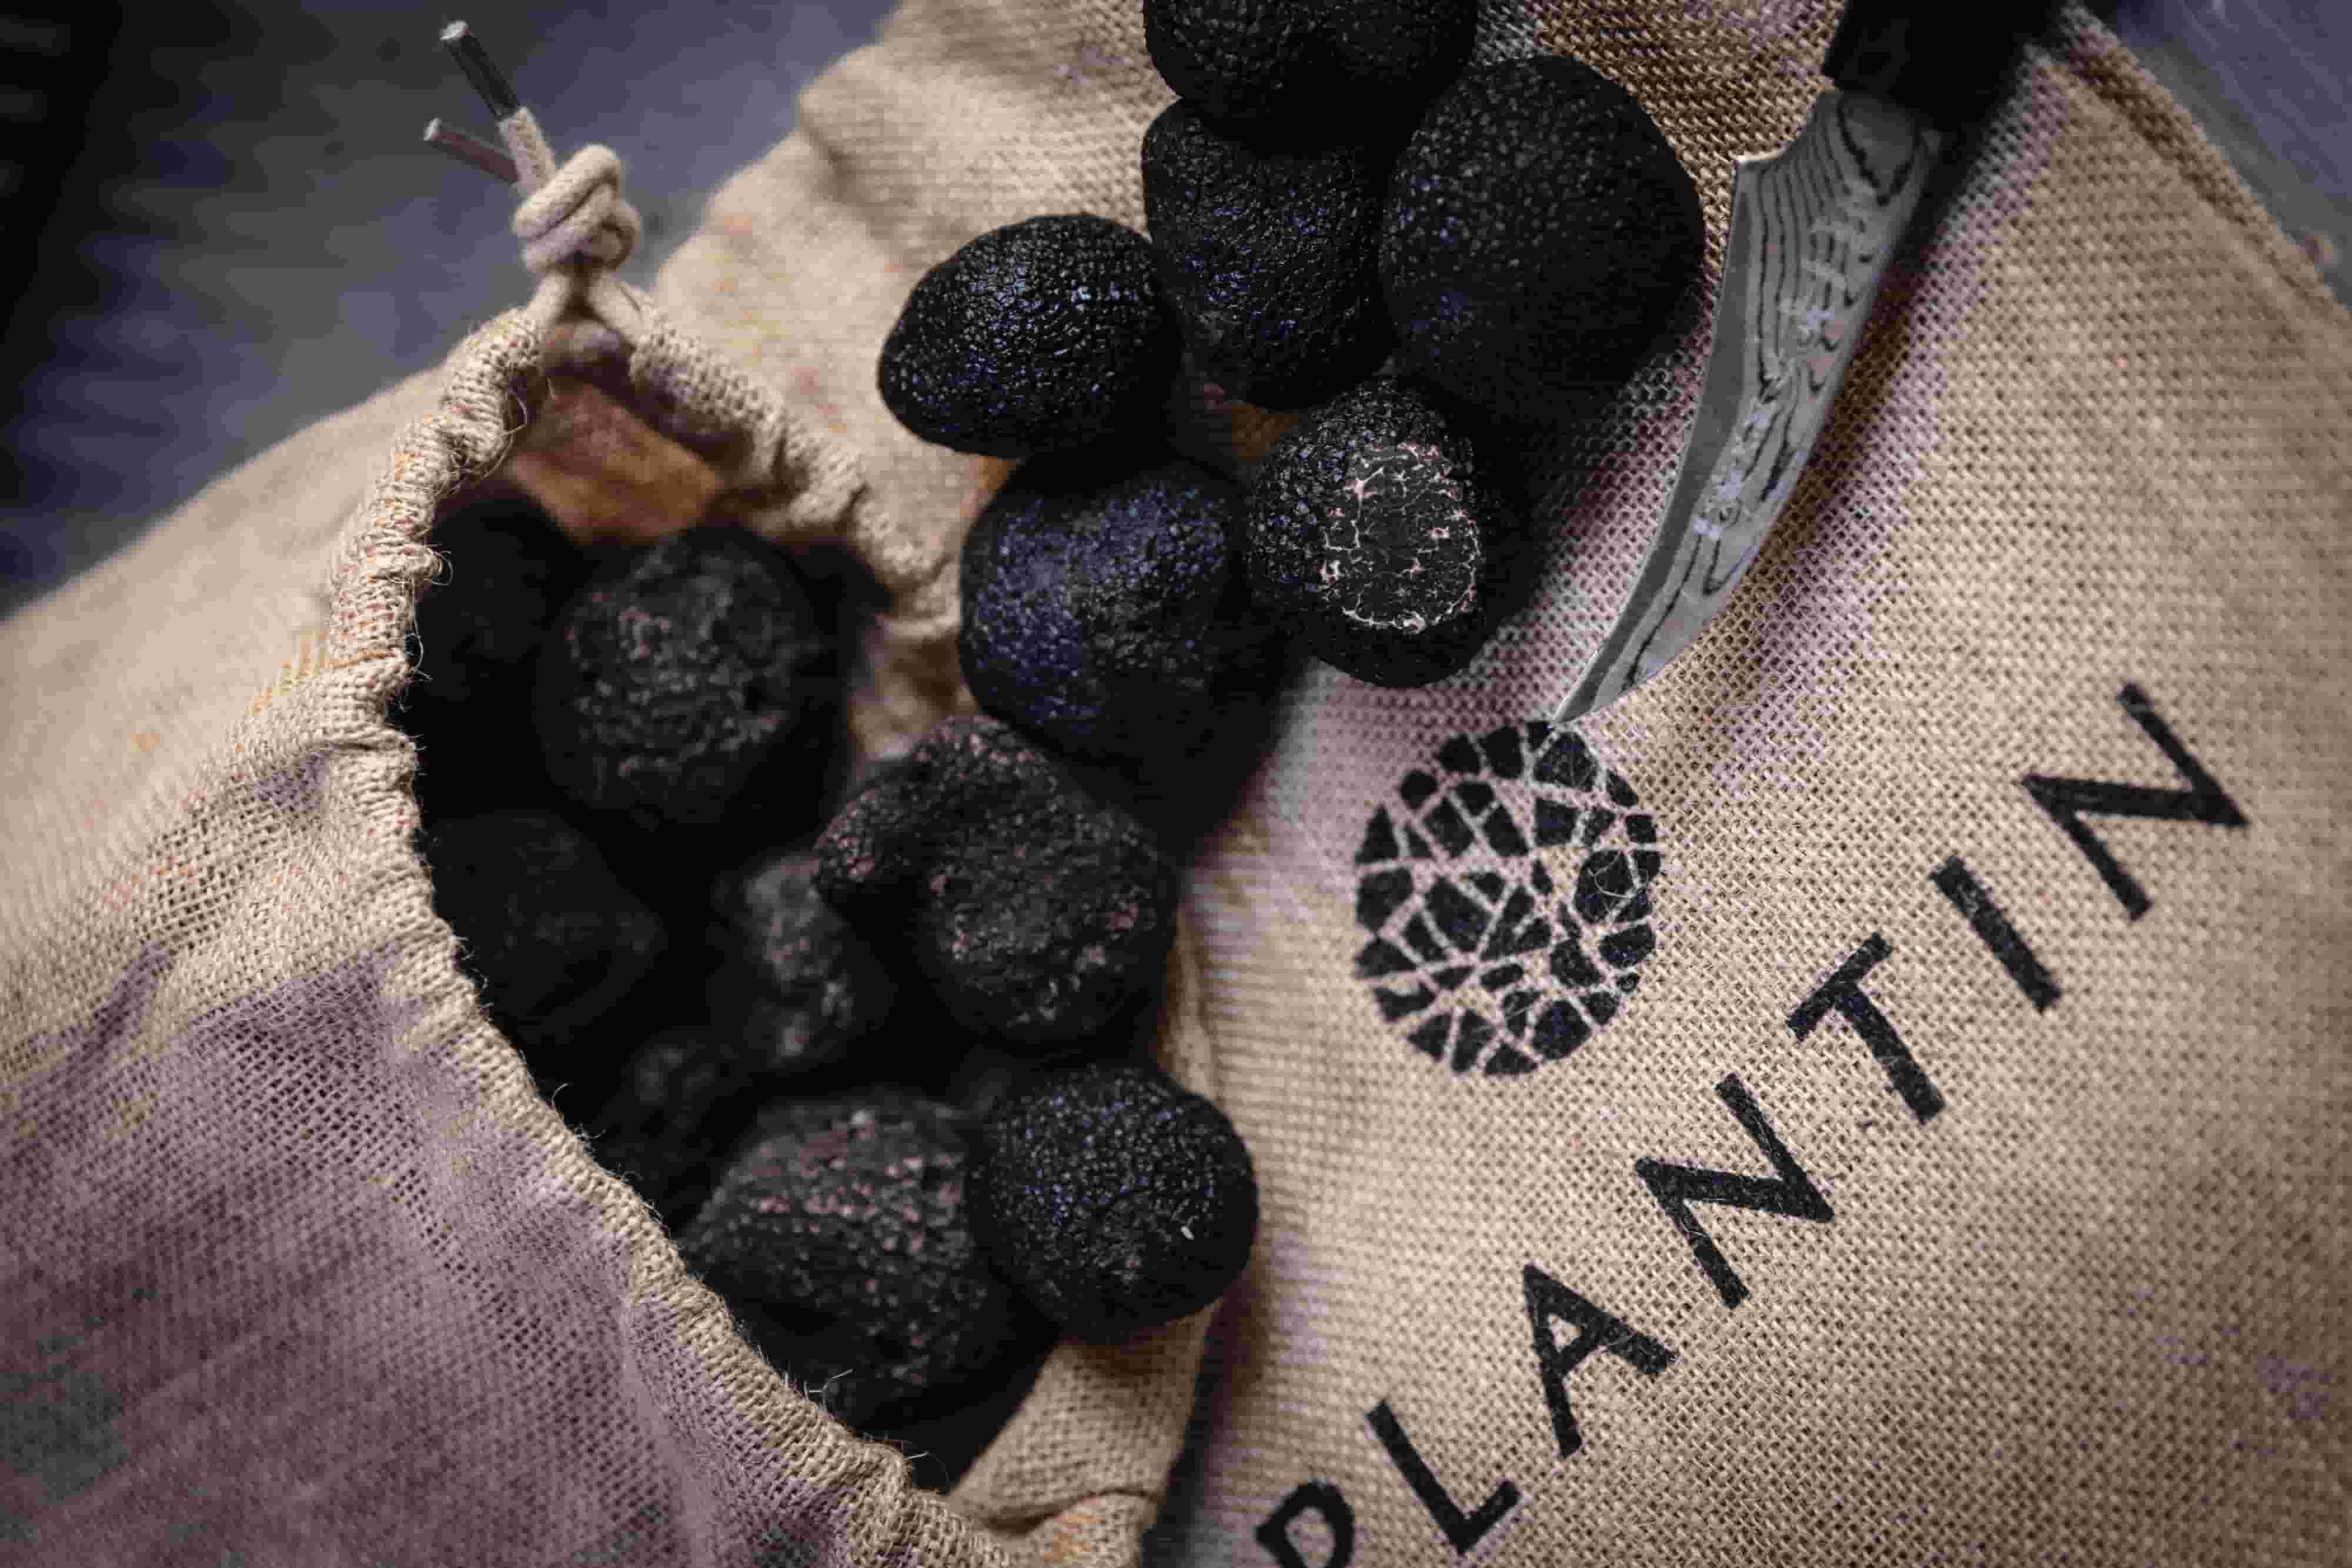 Coffret Solo Pelures de truffes noires Plantin